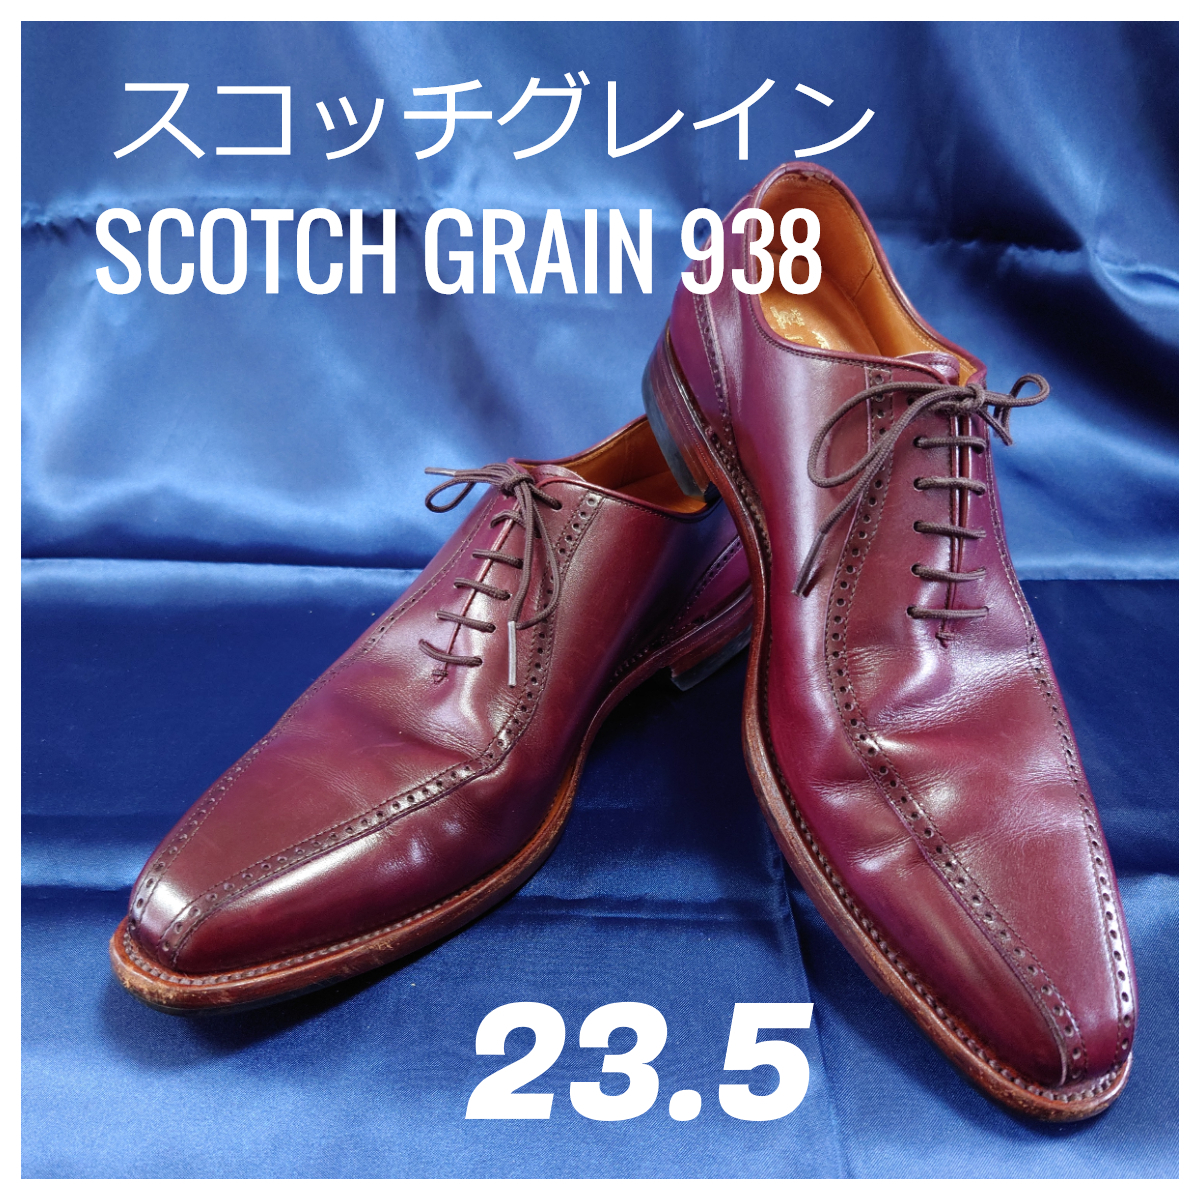 SCOTCH GRAIN 938 スコッチグレイン インペリアルII ツーシーム バーガンディ 23.5㎝